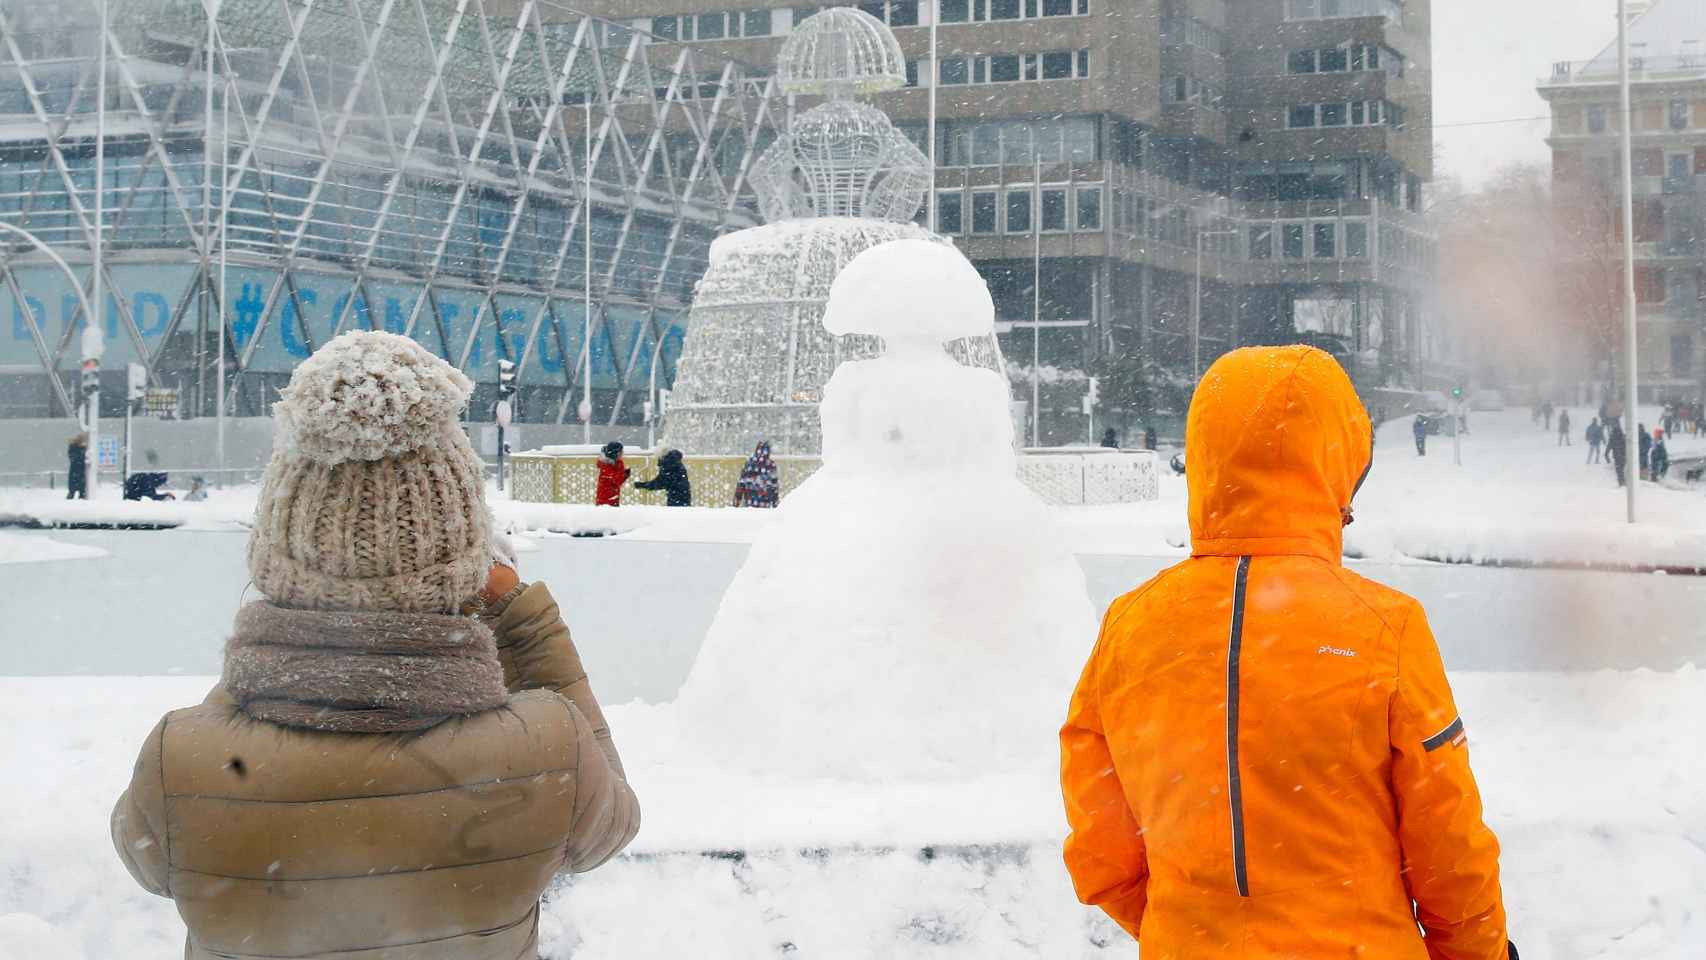 Una estatua de una menina reproducida con nieve en la Plaza de Colón en Madrid cubierta de nieve.